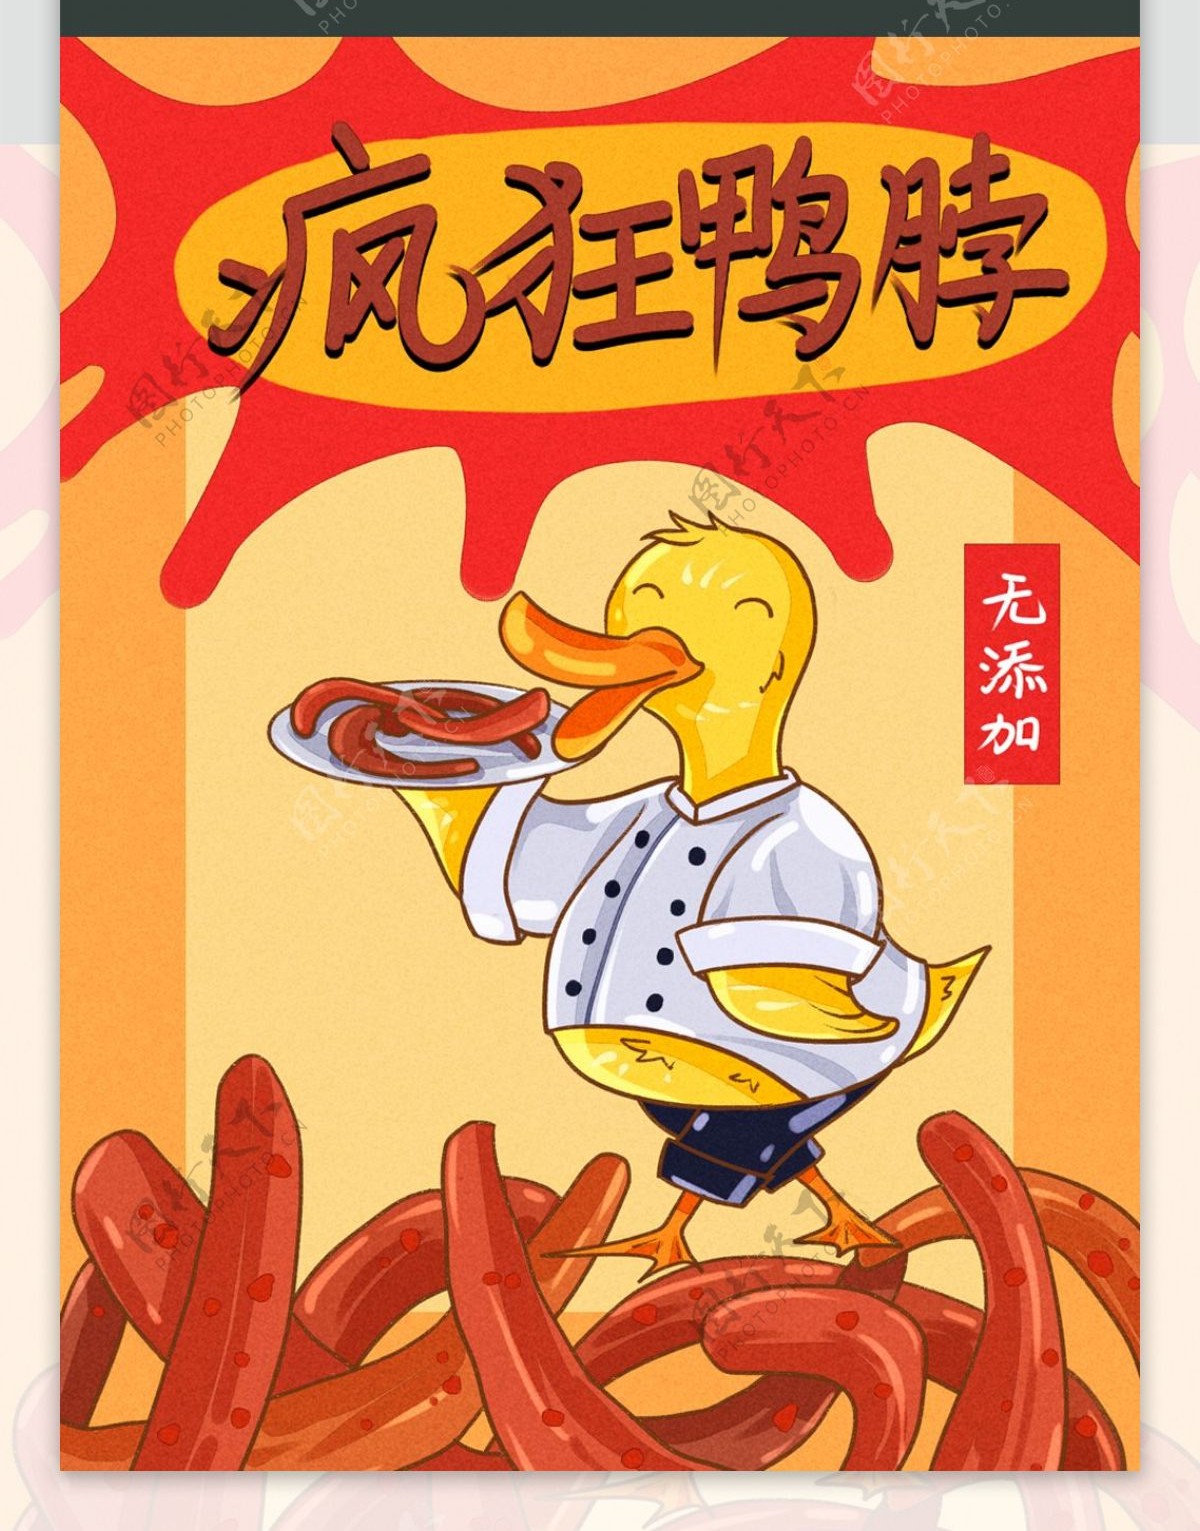 零食包装鸭脖拟人化卡通描边可爱鸭子